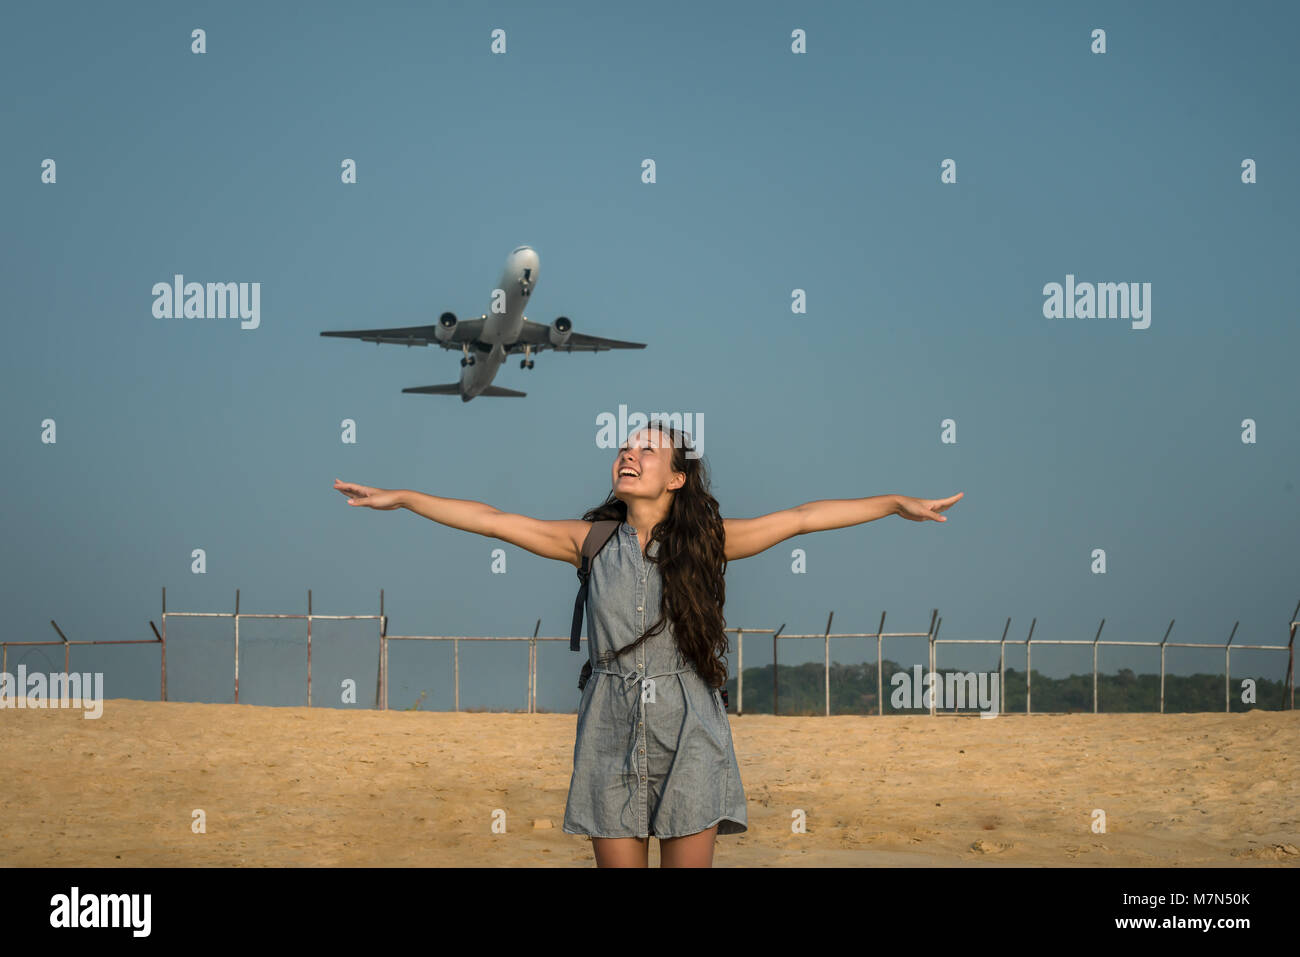 Flugzeug auf dem Hintergrund hinter einer jungen Frau. Weiblich steht und sich am Strand in der Nähe von Flughafen und breitete die Arme bereit für "Fly away". Stockfoto